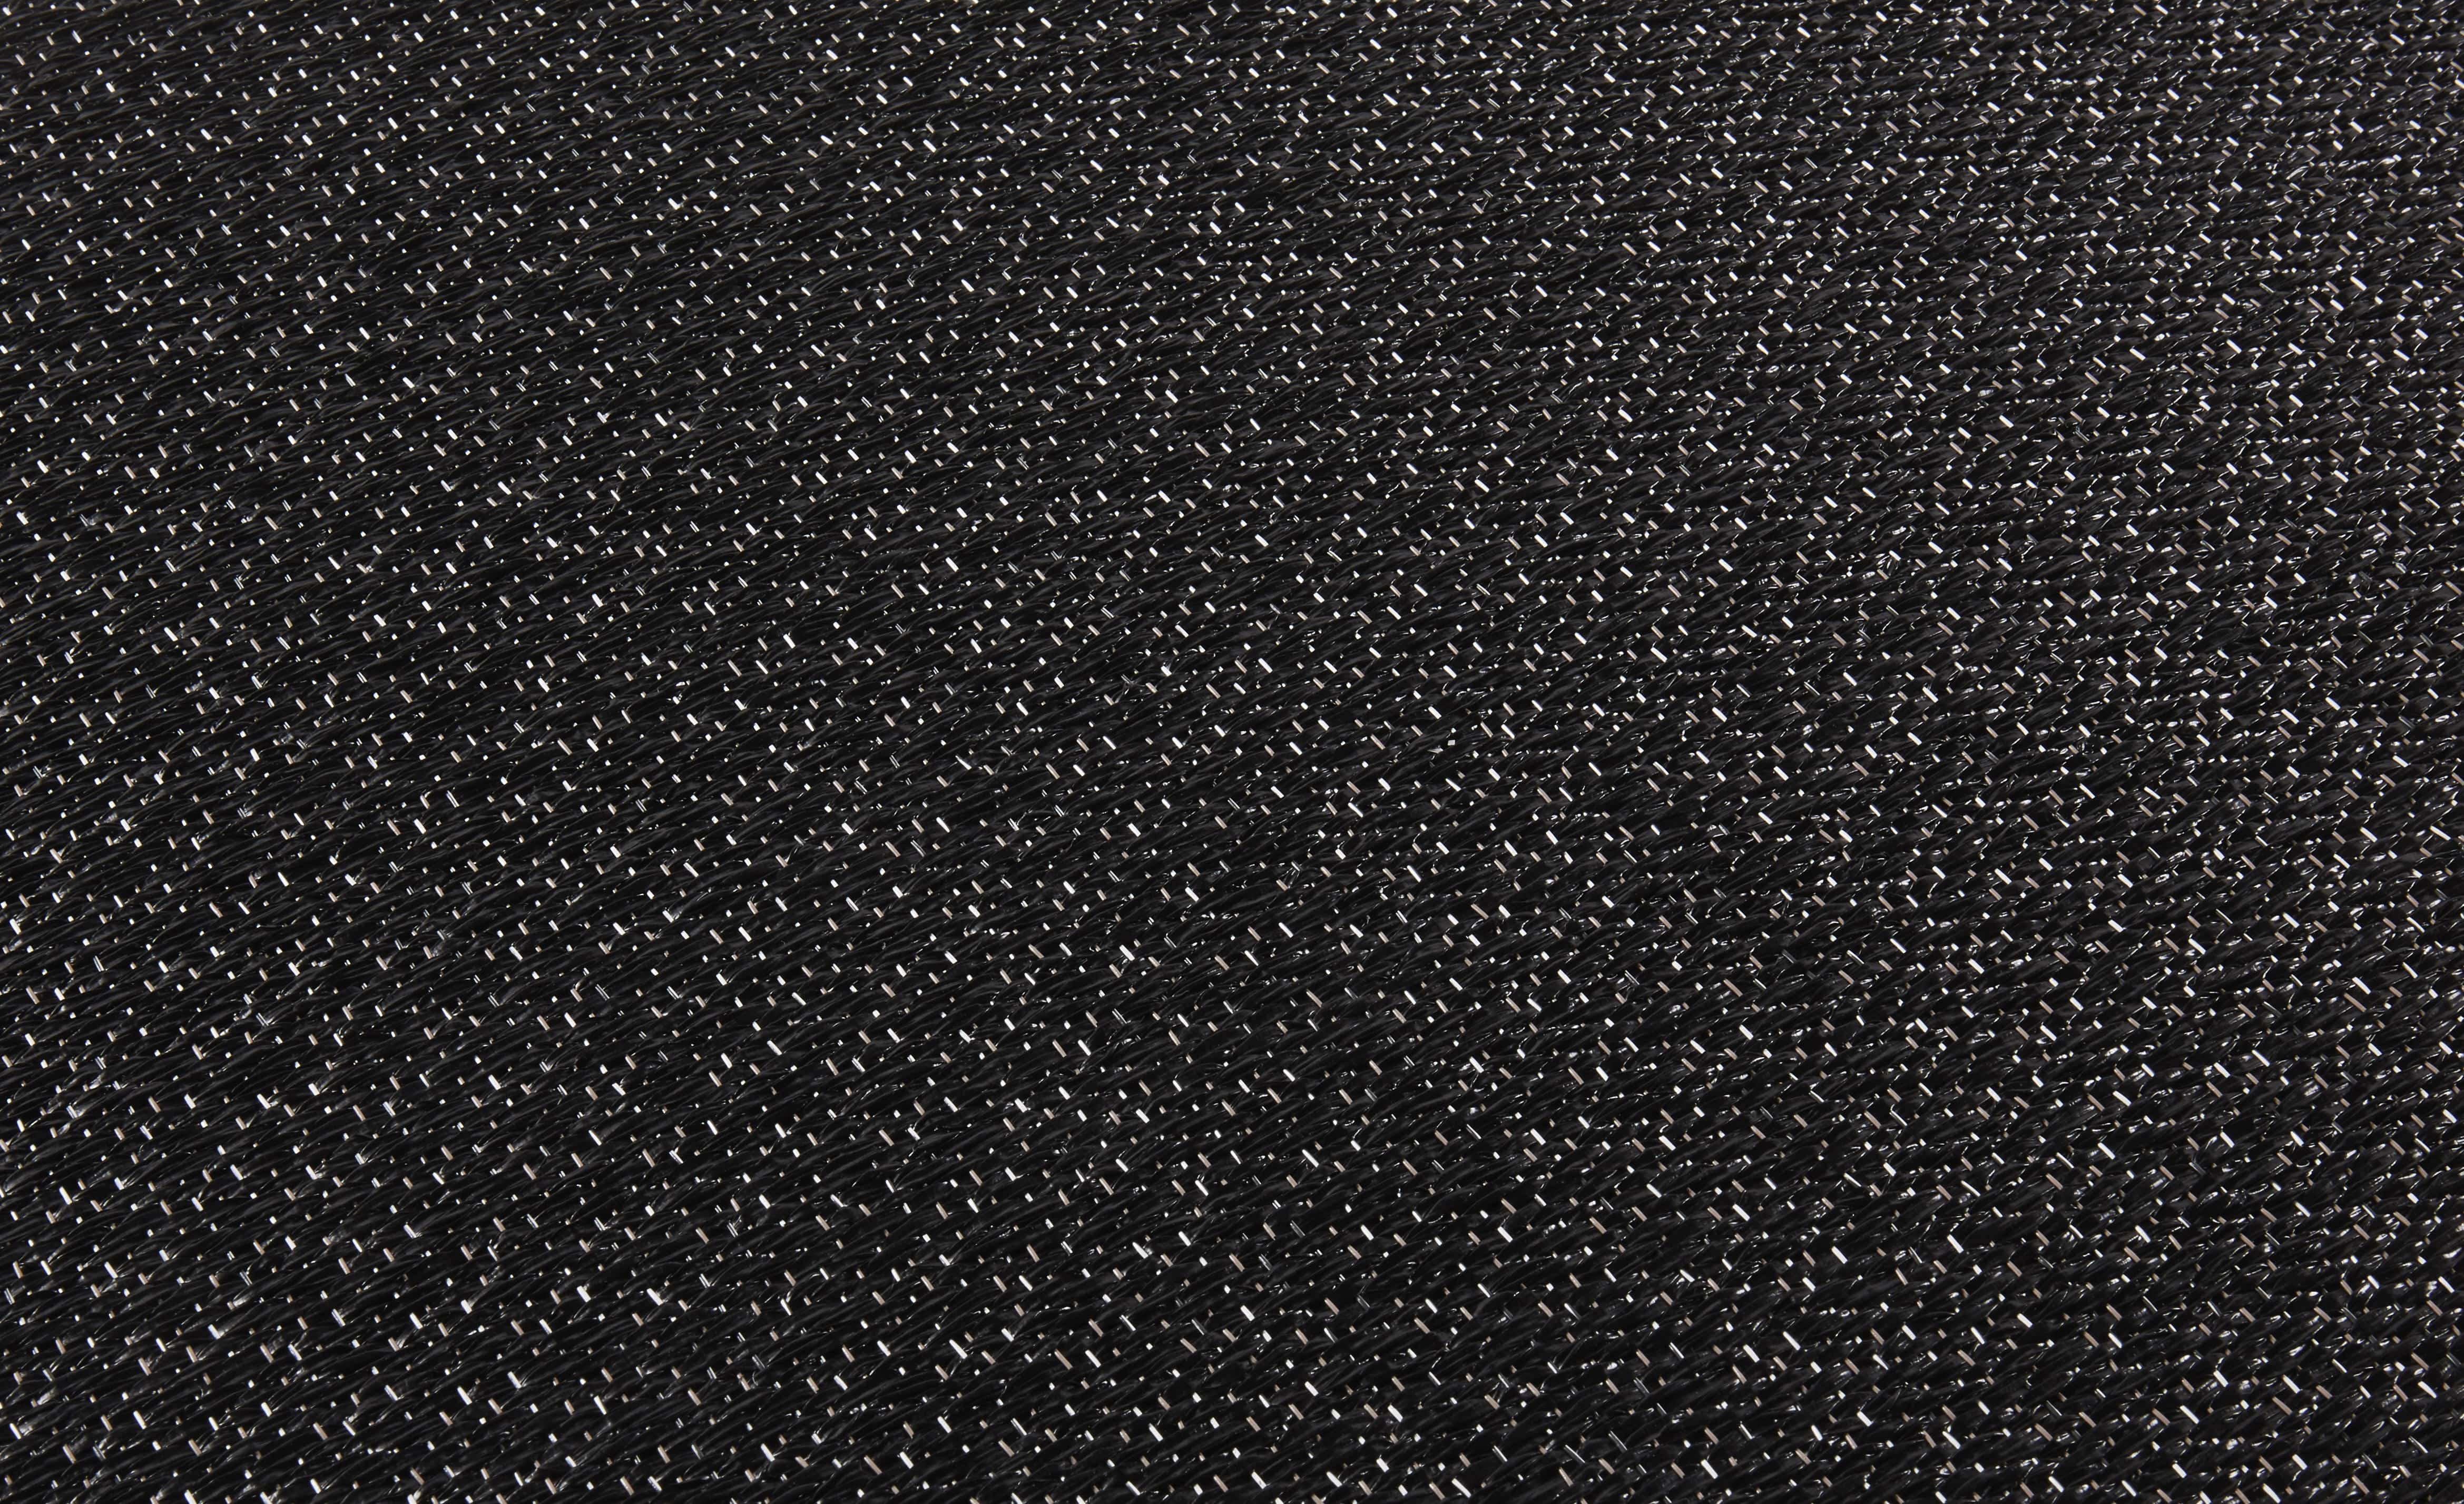 Sol vinyle rouleau LINNEN GRAPHITE, Textile fibre tissée graphite, rouleau 2.00 m